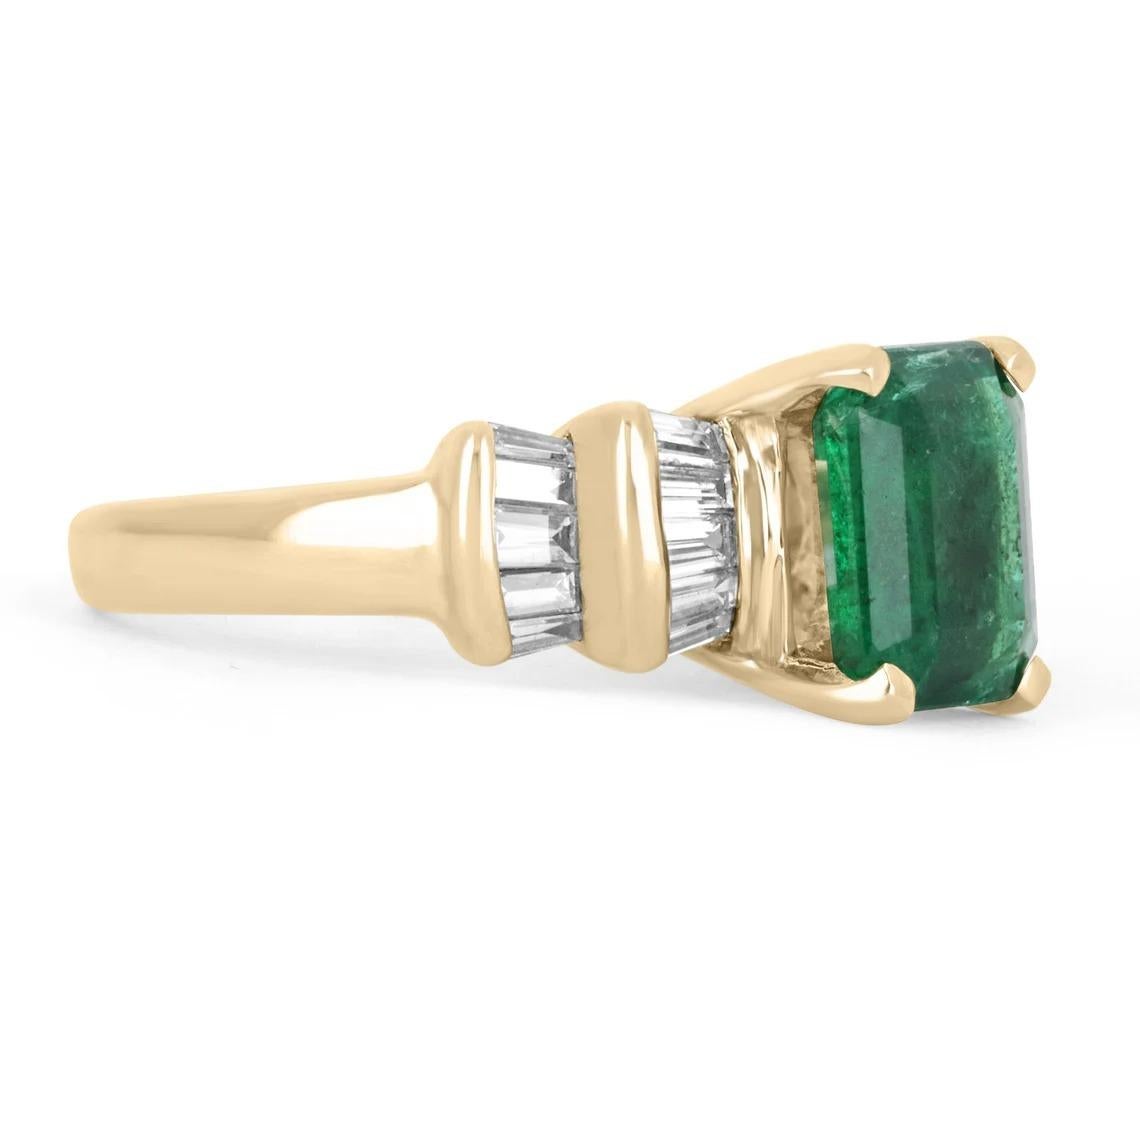 Hier ist ein atemberaubender Ring mit Smaragd und Diamanten zu sehen. Der Mittelstein ist ein wunderschöner, natürlicher Smaragd von 3,03 Karat, der eine dunkelgrüne Farbe und einen sehr guten Lüster aufweist. Kleinere Unvollkommenheiten können